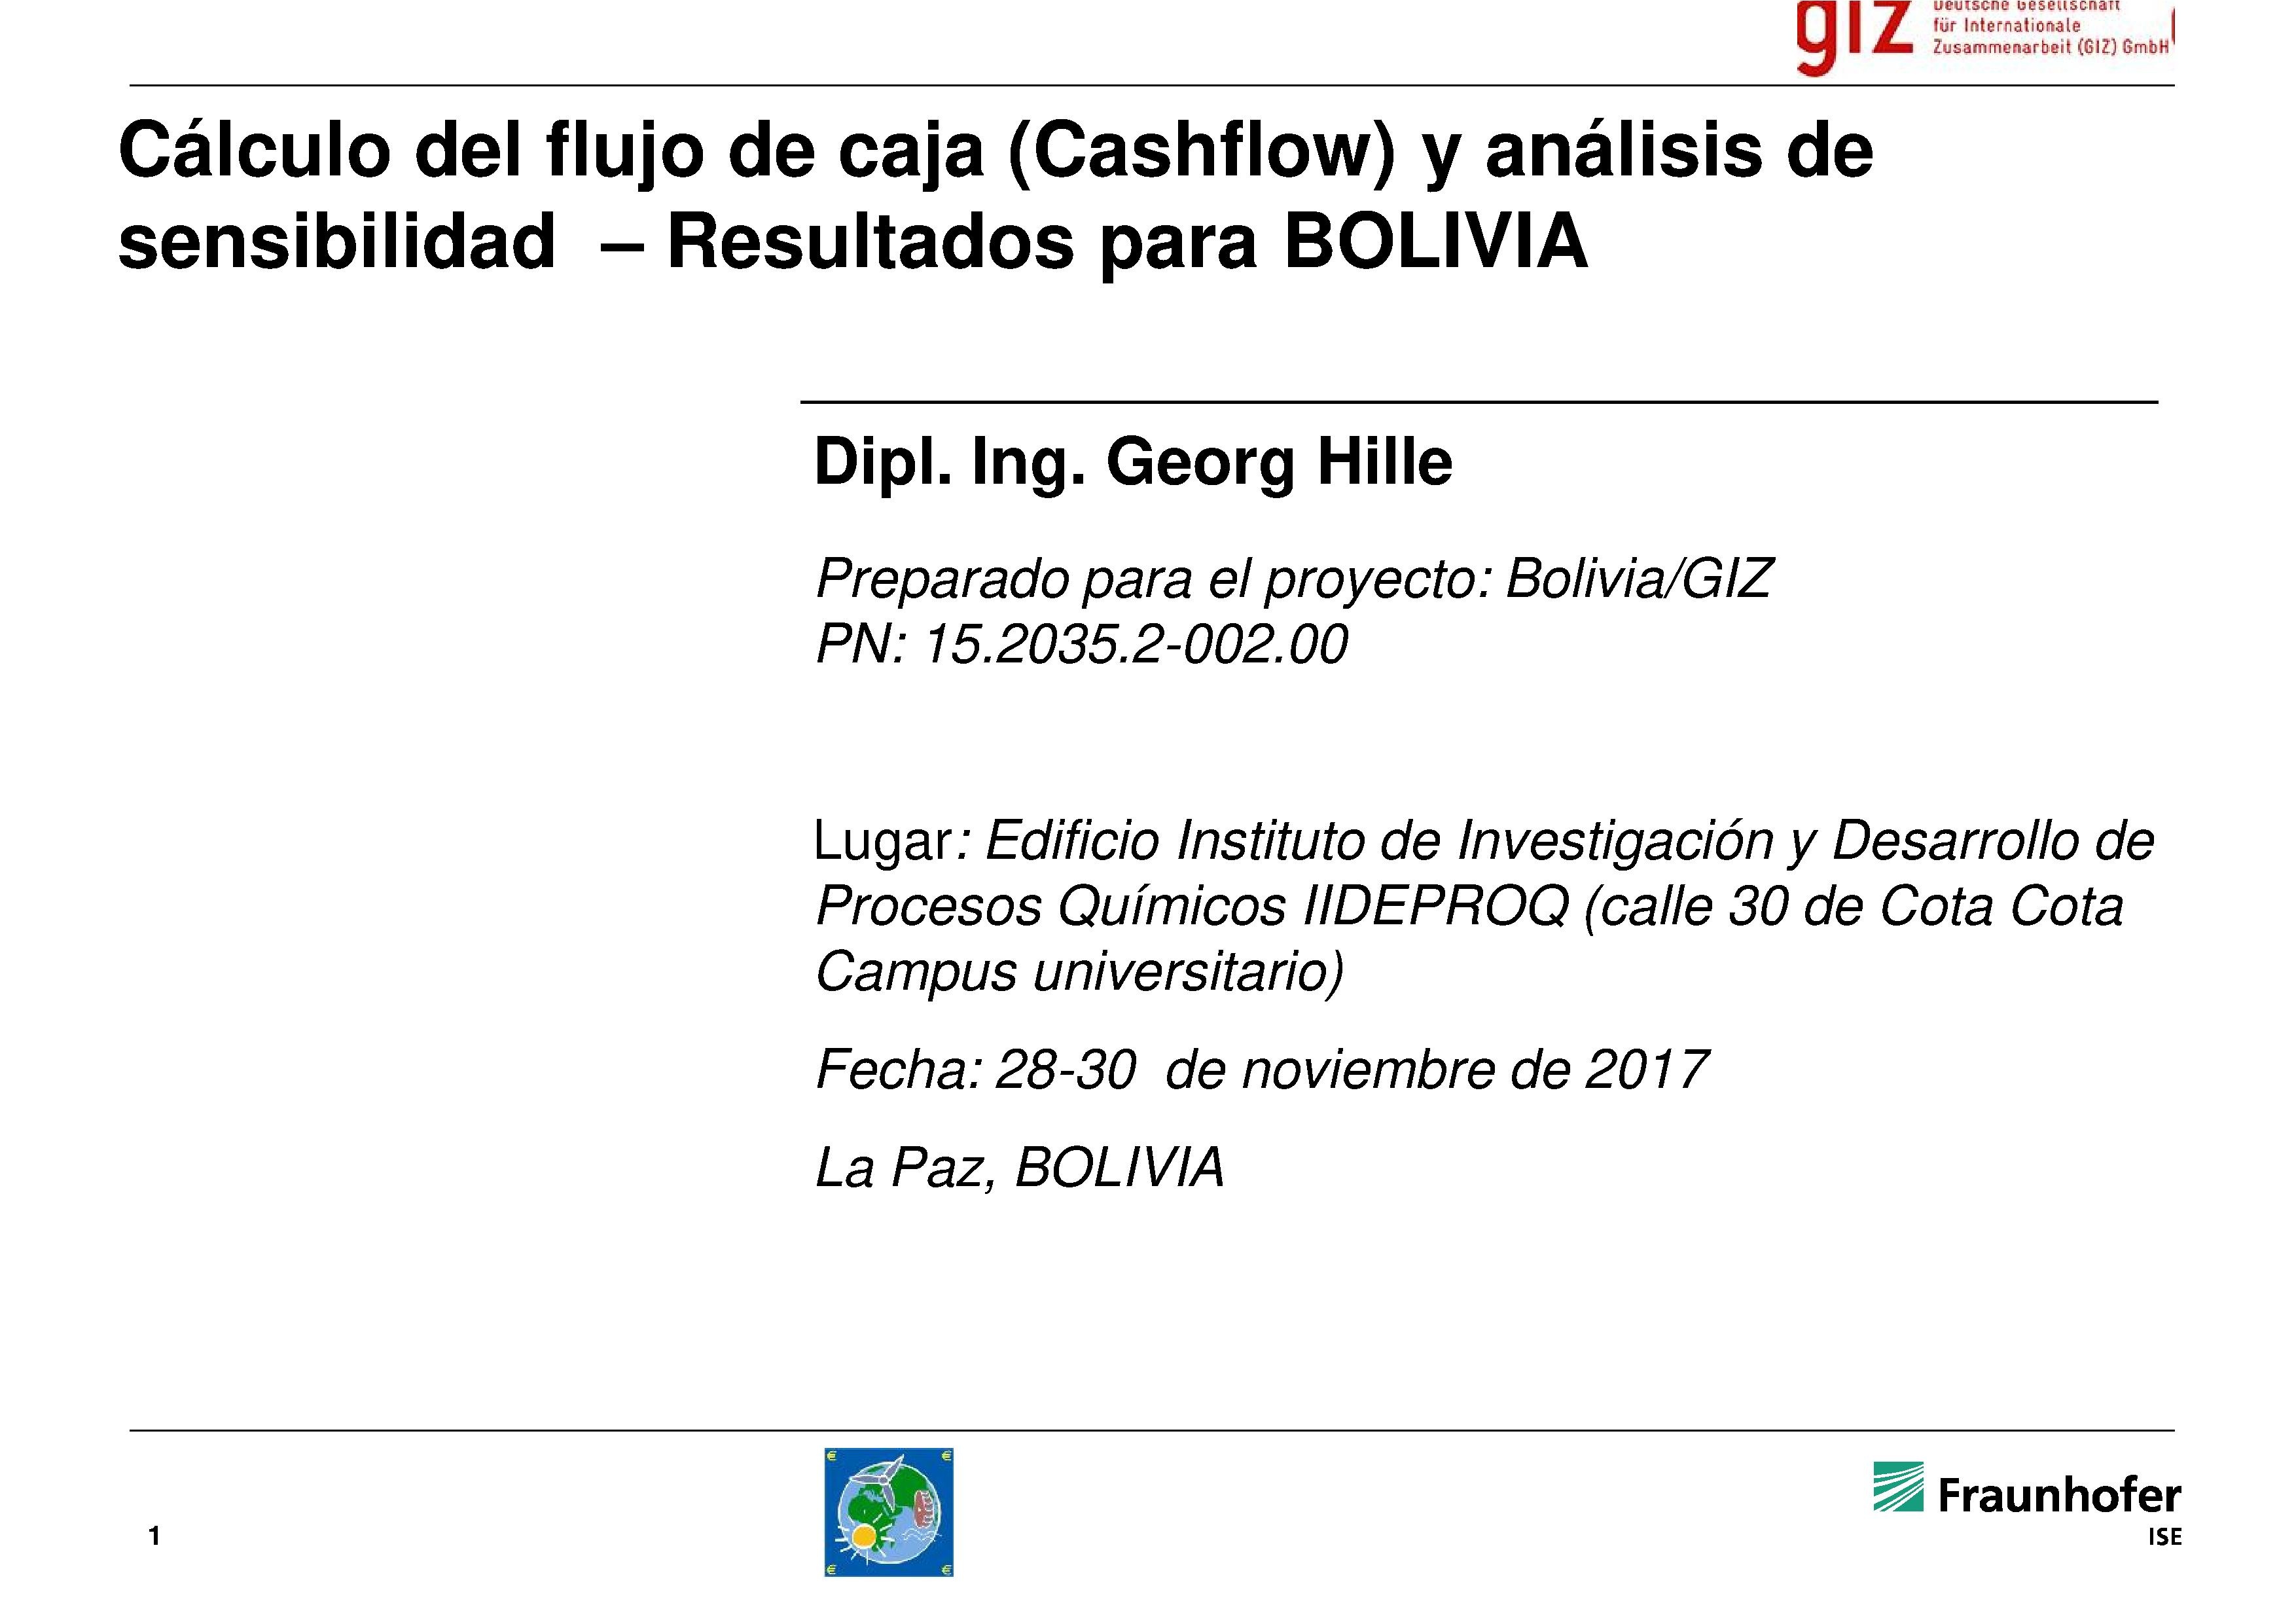 • Cálculo del flujo de caja (cashflow) y análisis de sensibilidad, resultados para Bolivia (Georg Hille)